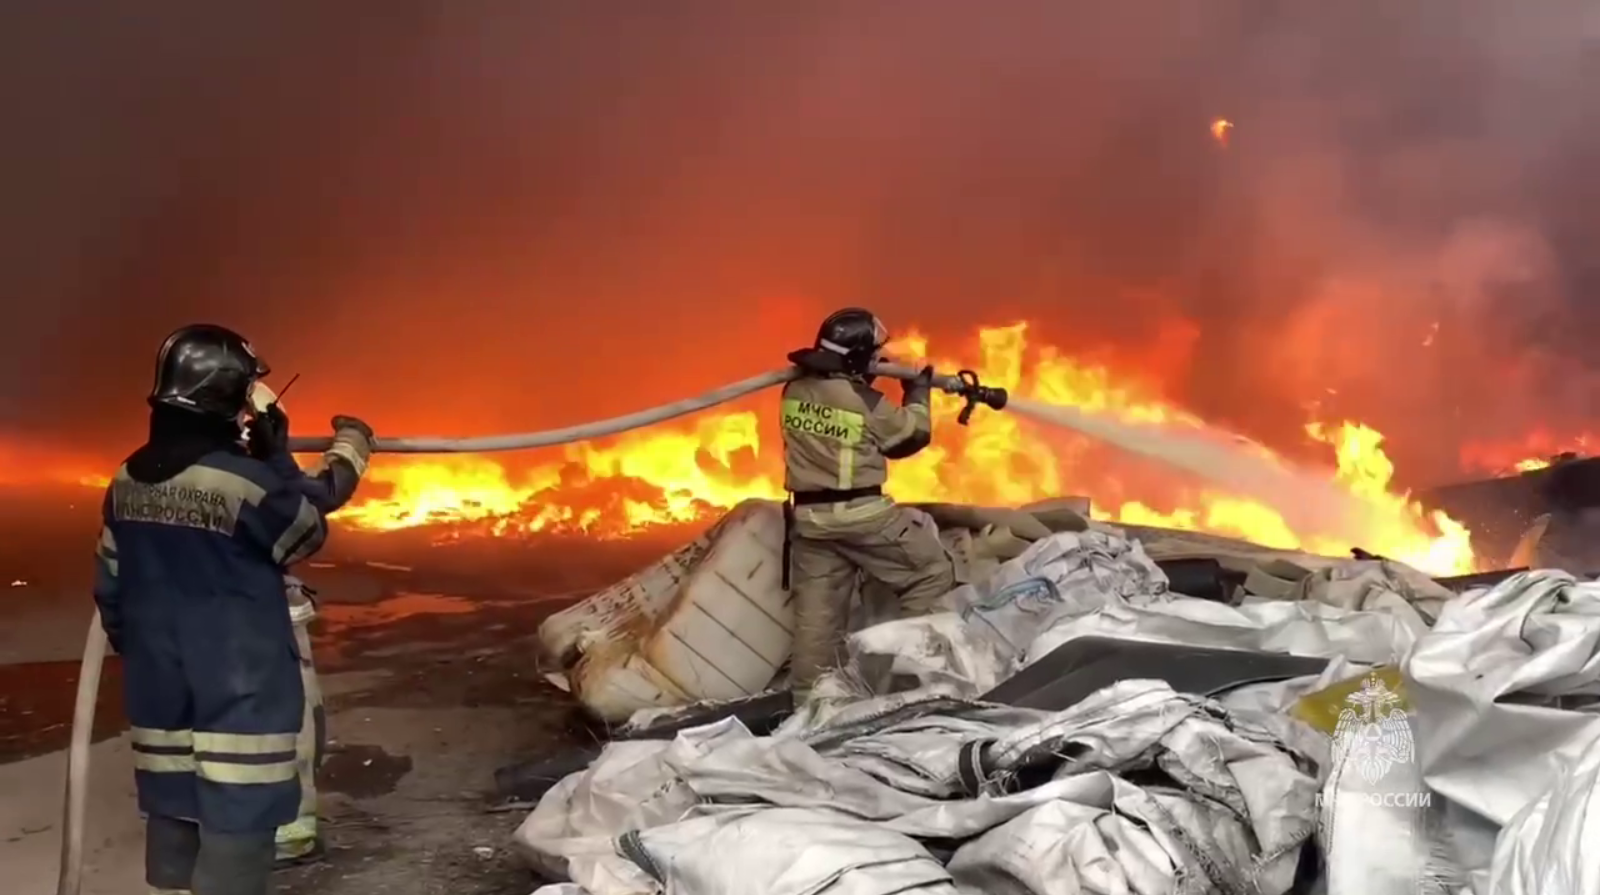 Площадь возгорания 4 тысячи кв. м: в российском Екатеринбурге загорелись склады. Видео